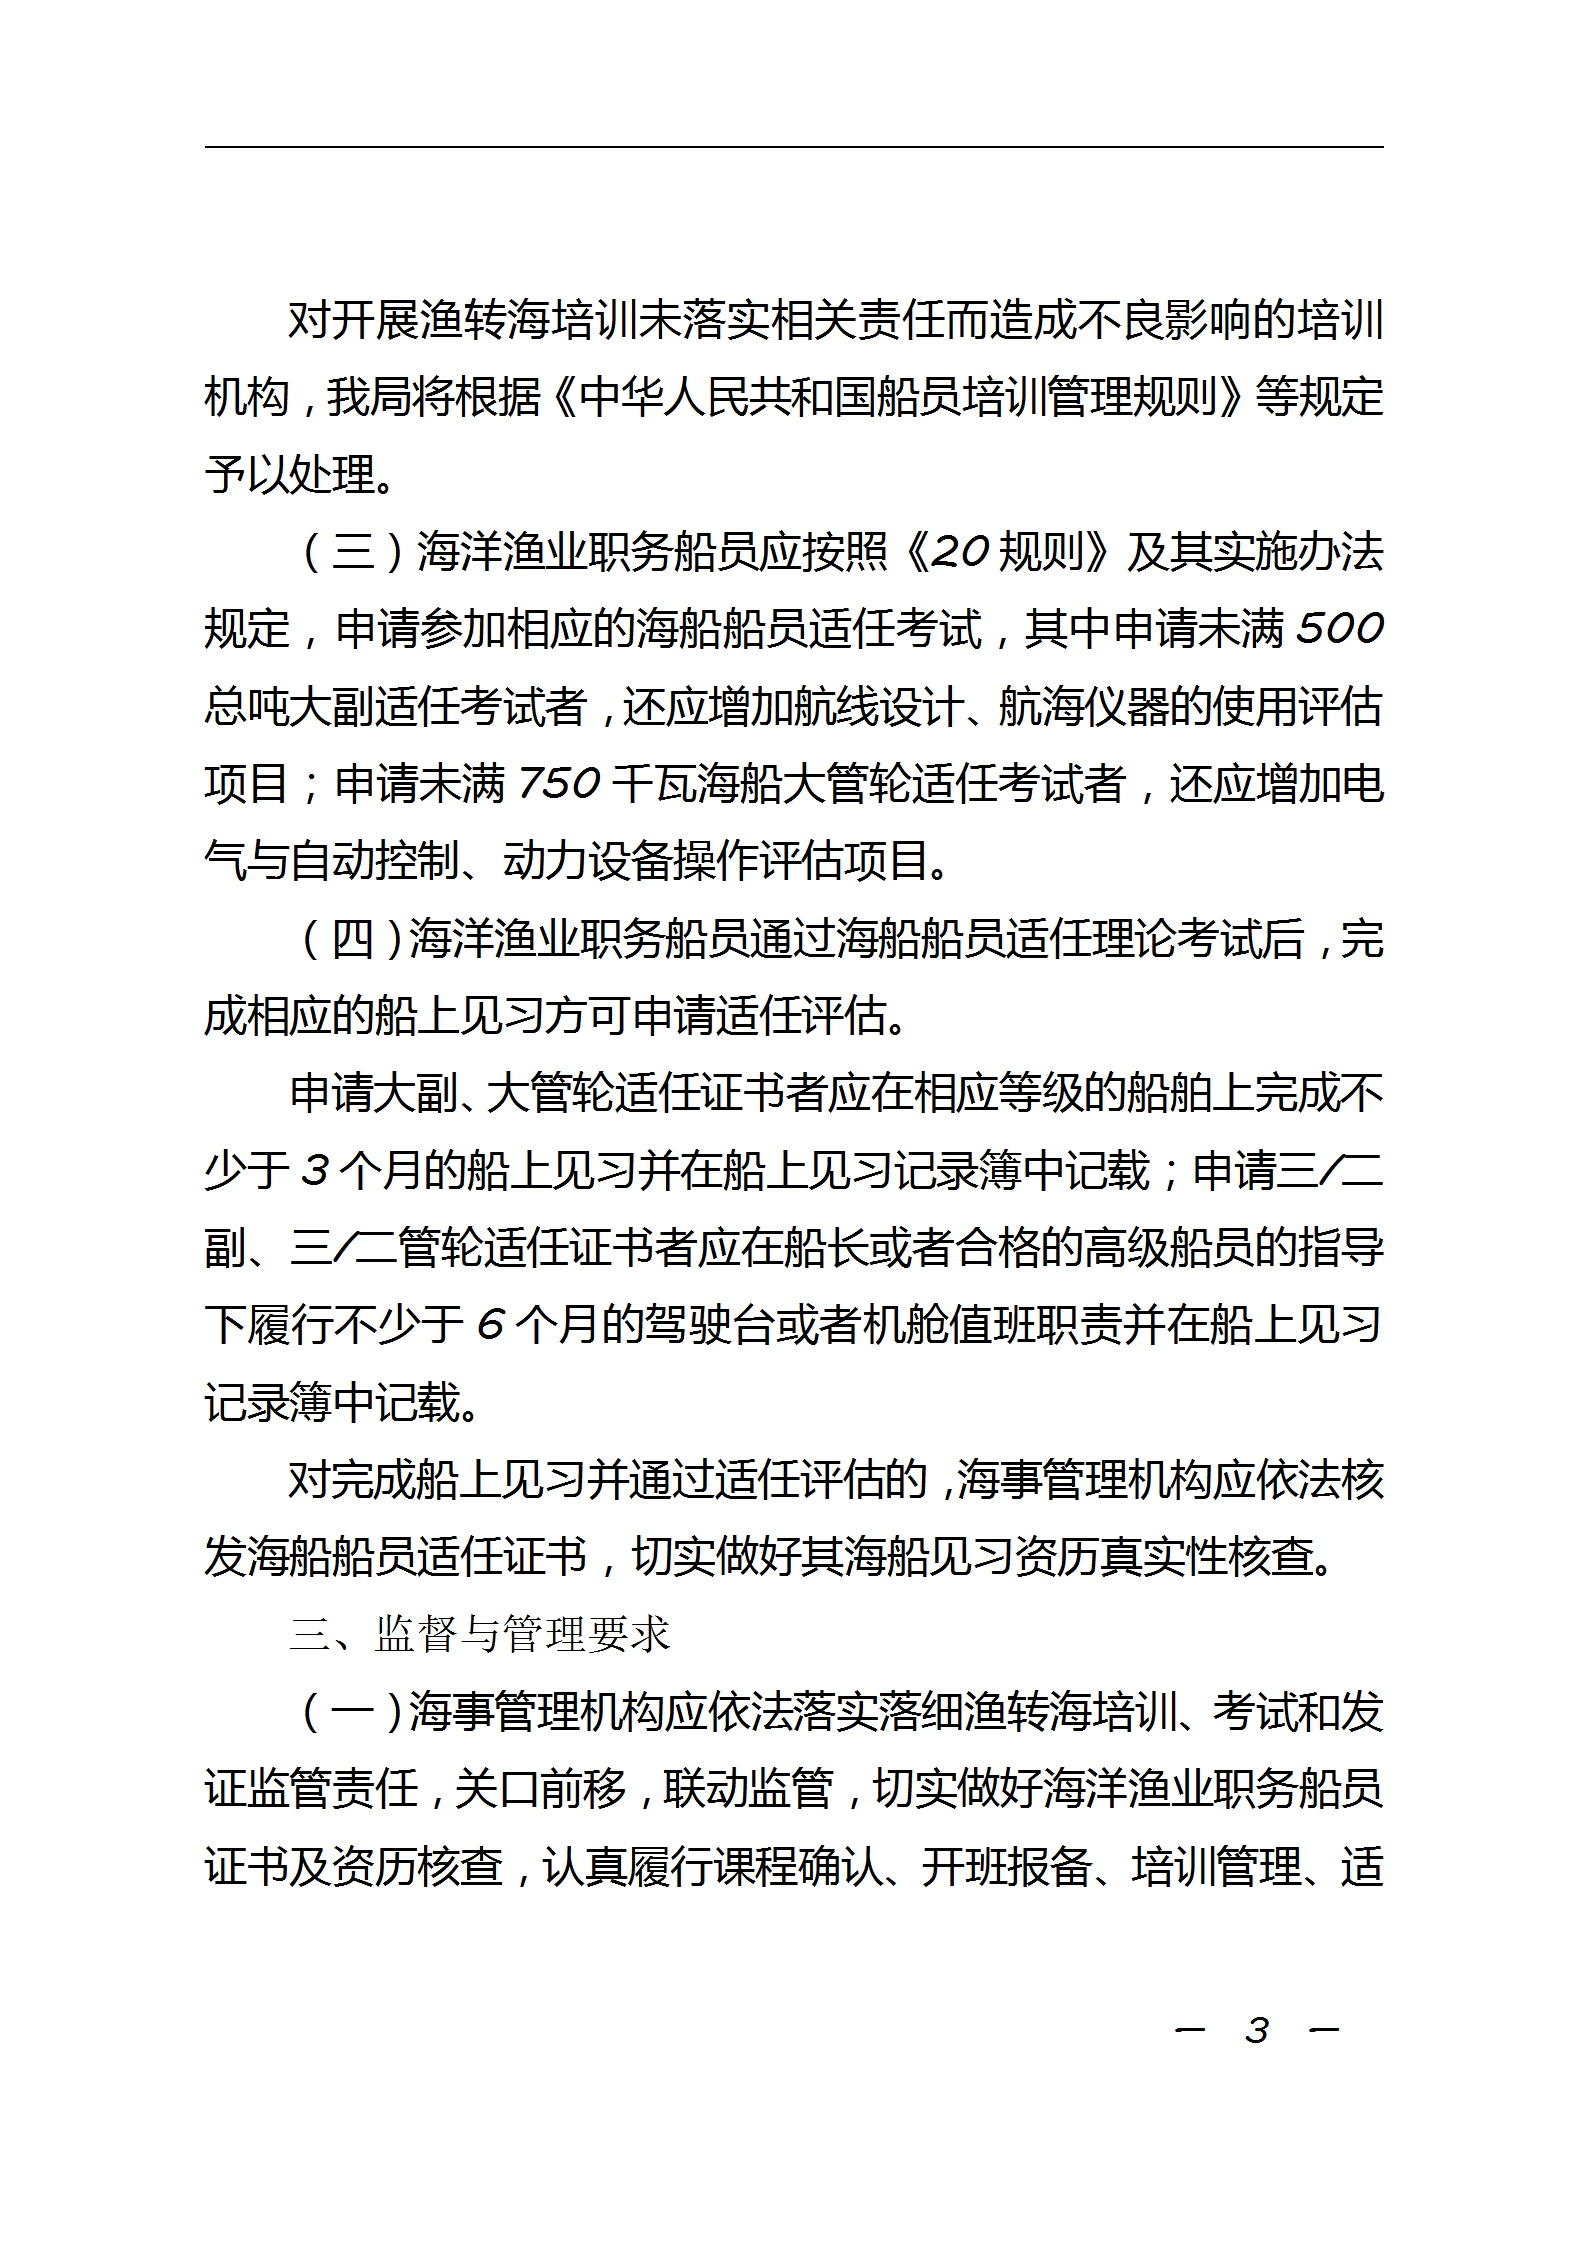 中华人民共和国海事局关于海洋渔业职务船员申请海船船员培训考试和发证有关事项的通知_03.png